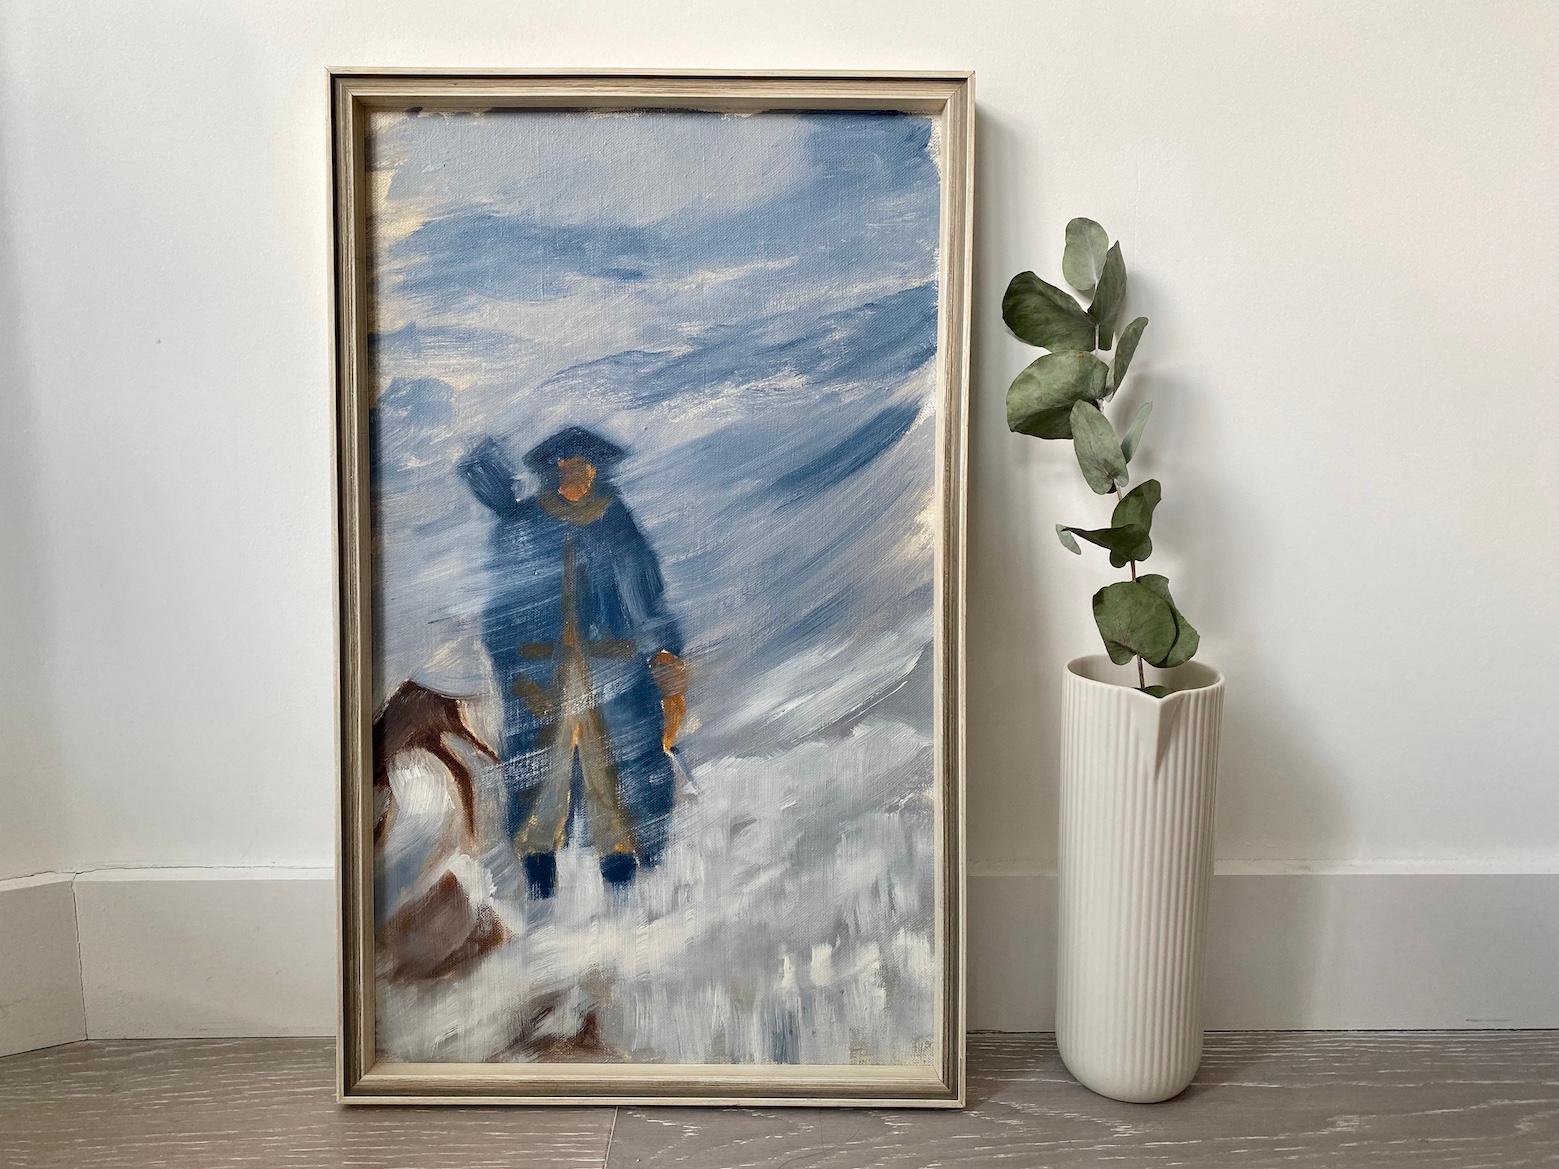 Figurative Painting Unknown - Scène d'hiver figurative abstraite vintage moderne du milieu du siècle dernier « Snow Storm », huile